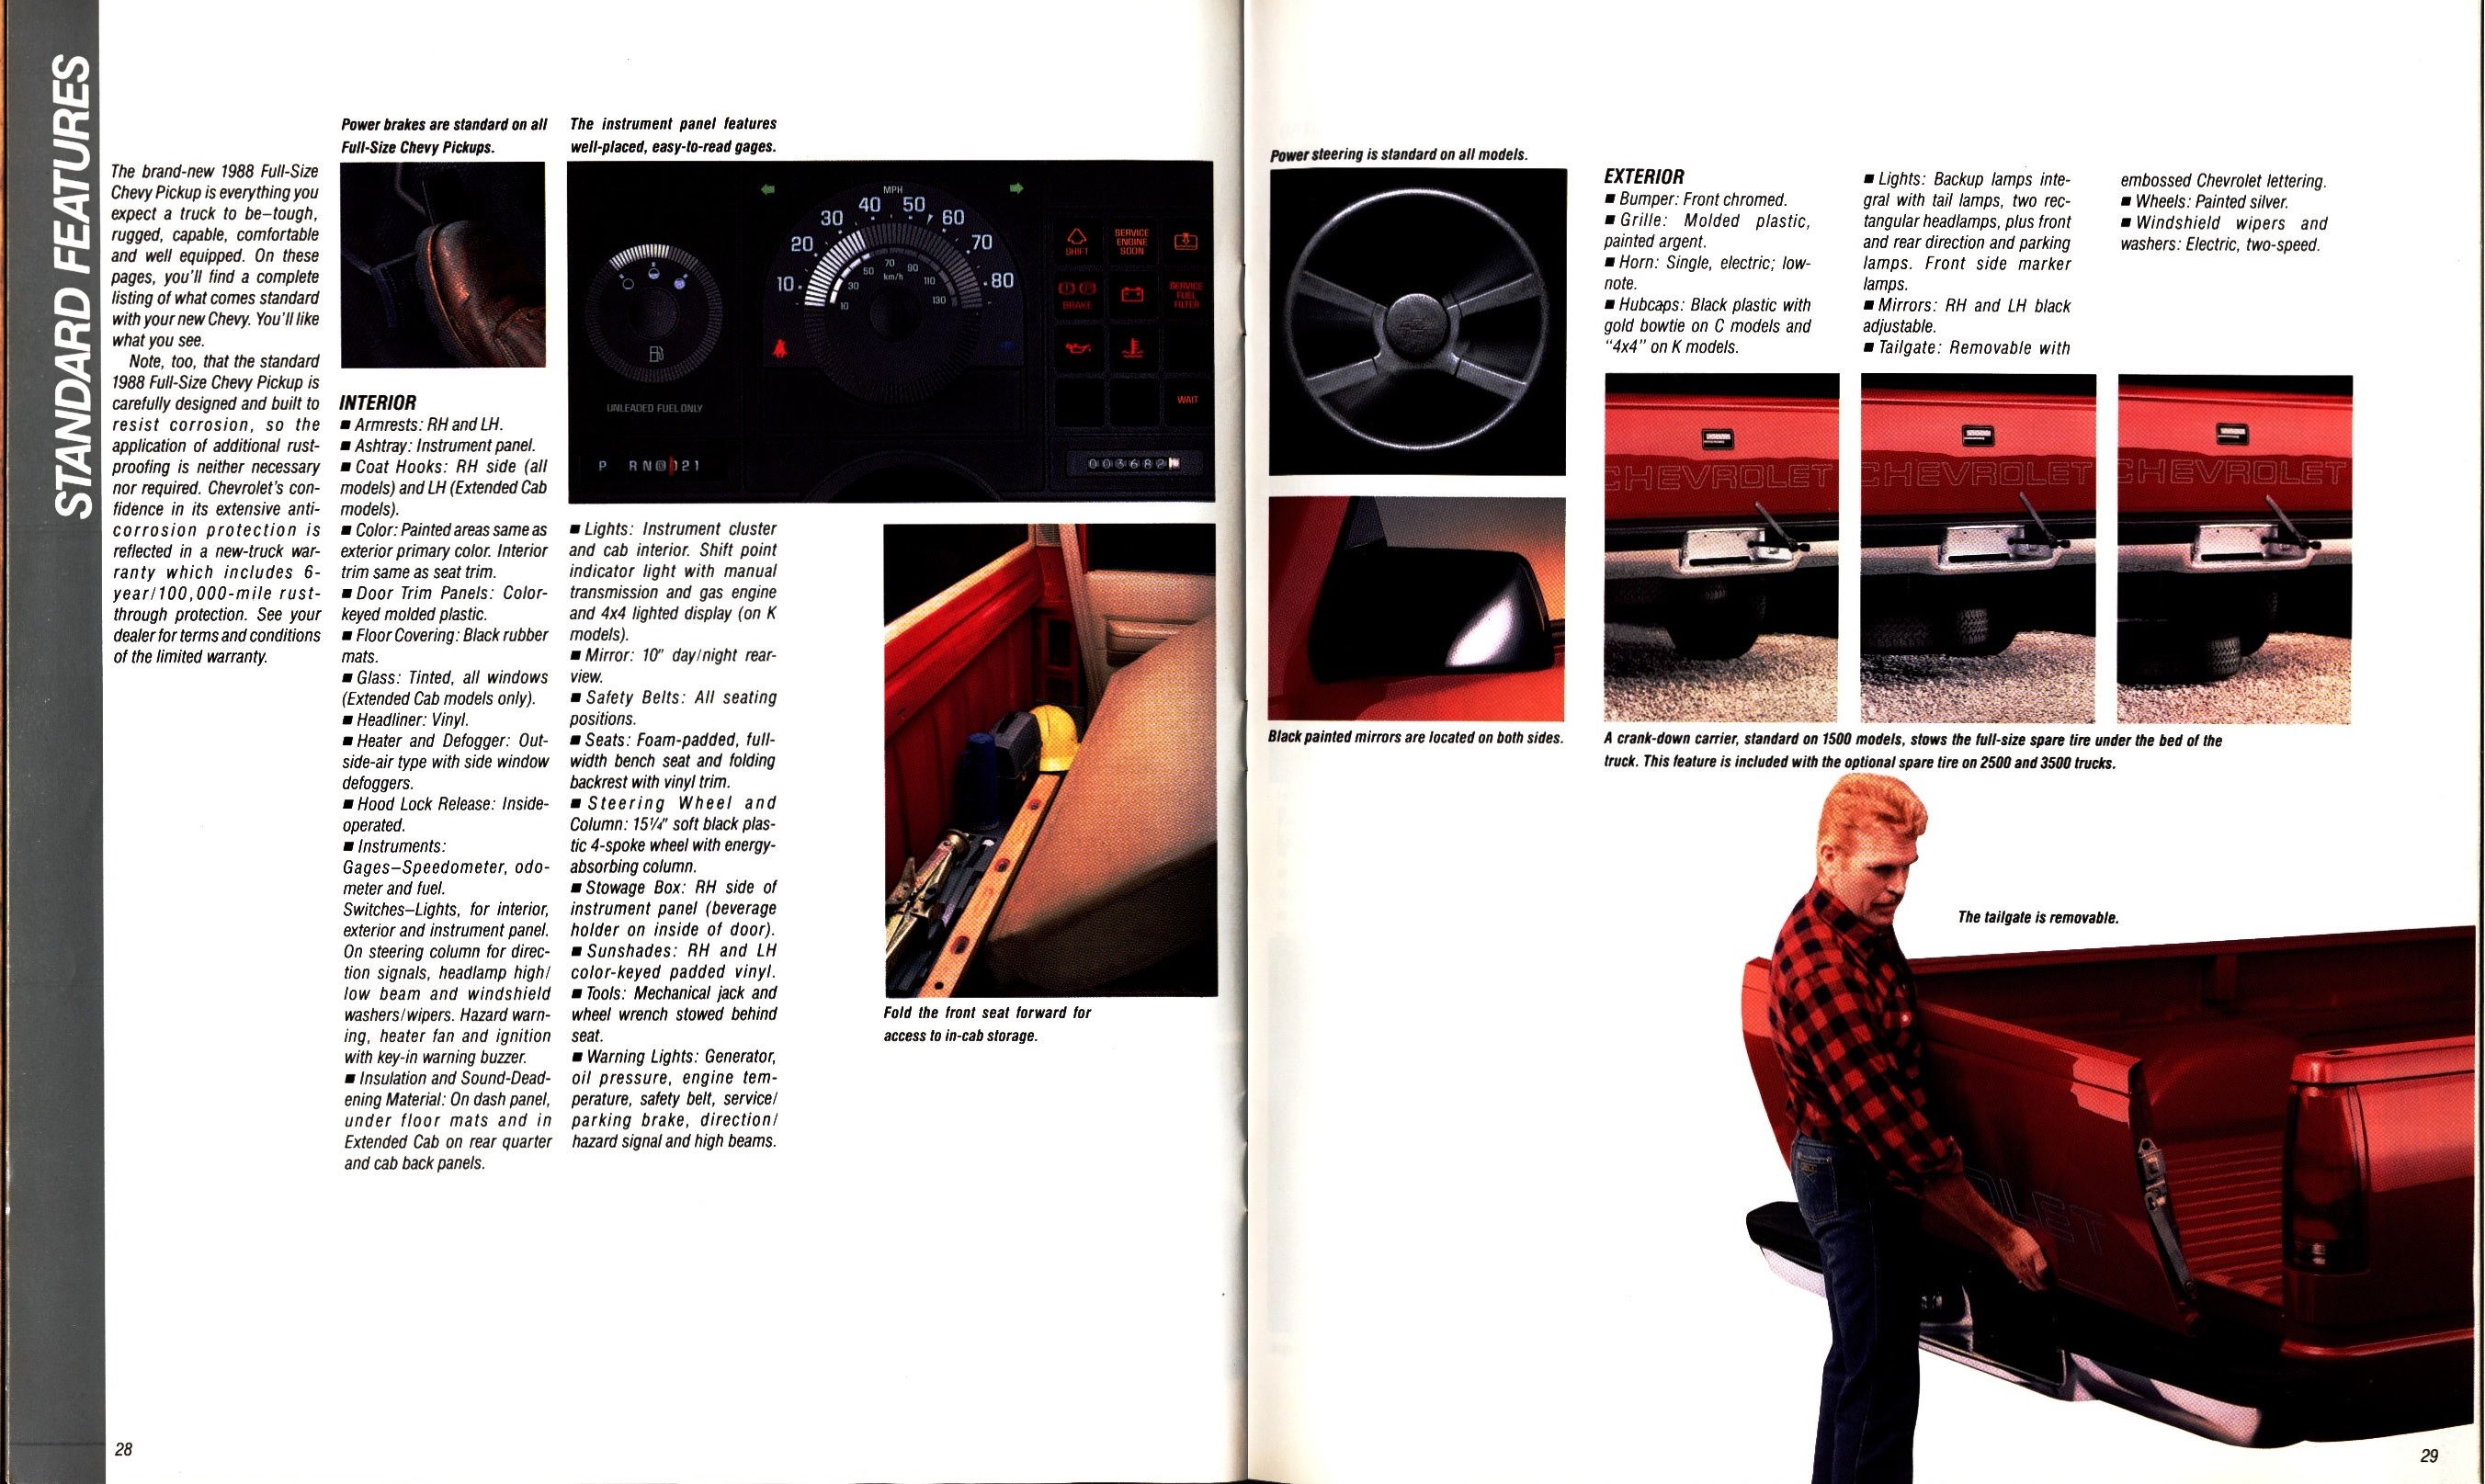 1988 Chevrolet Full Size Pickup Brochure (Rev) 28-29